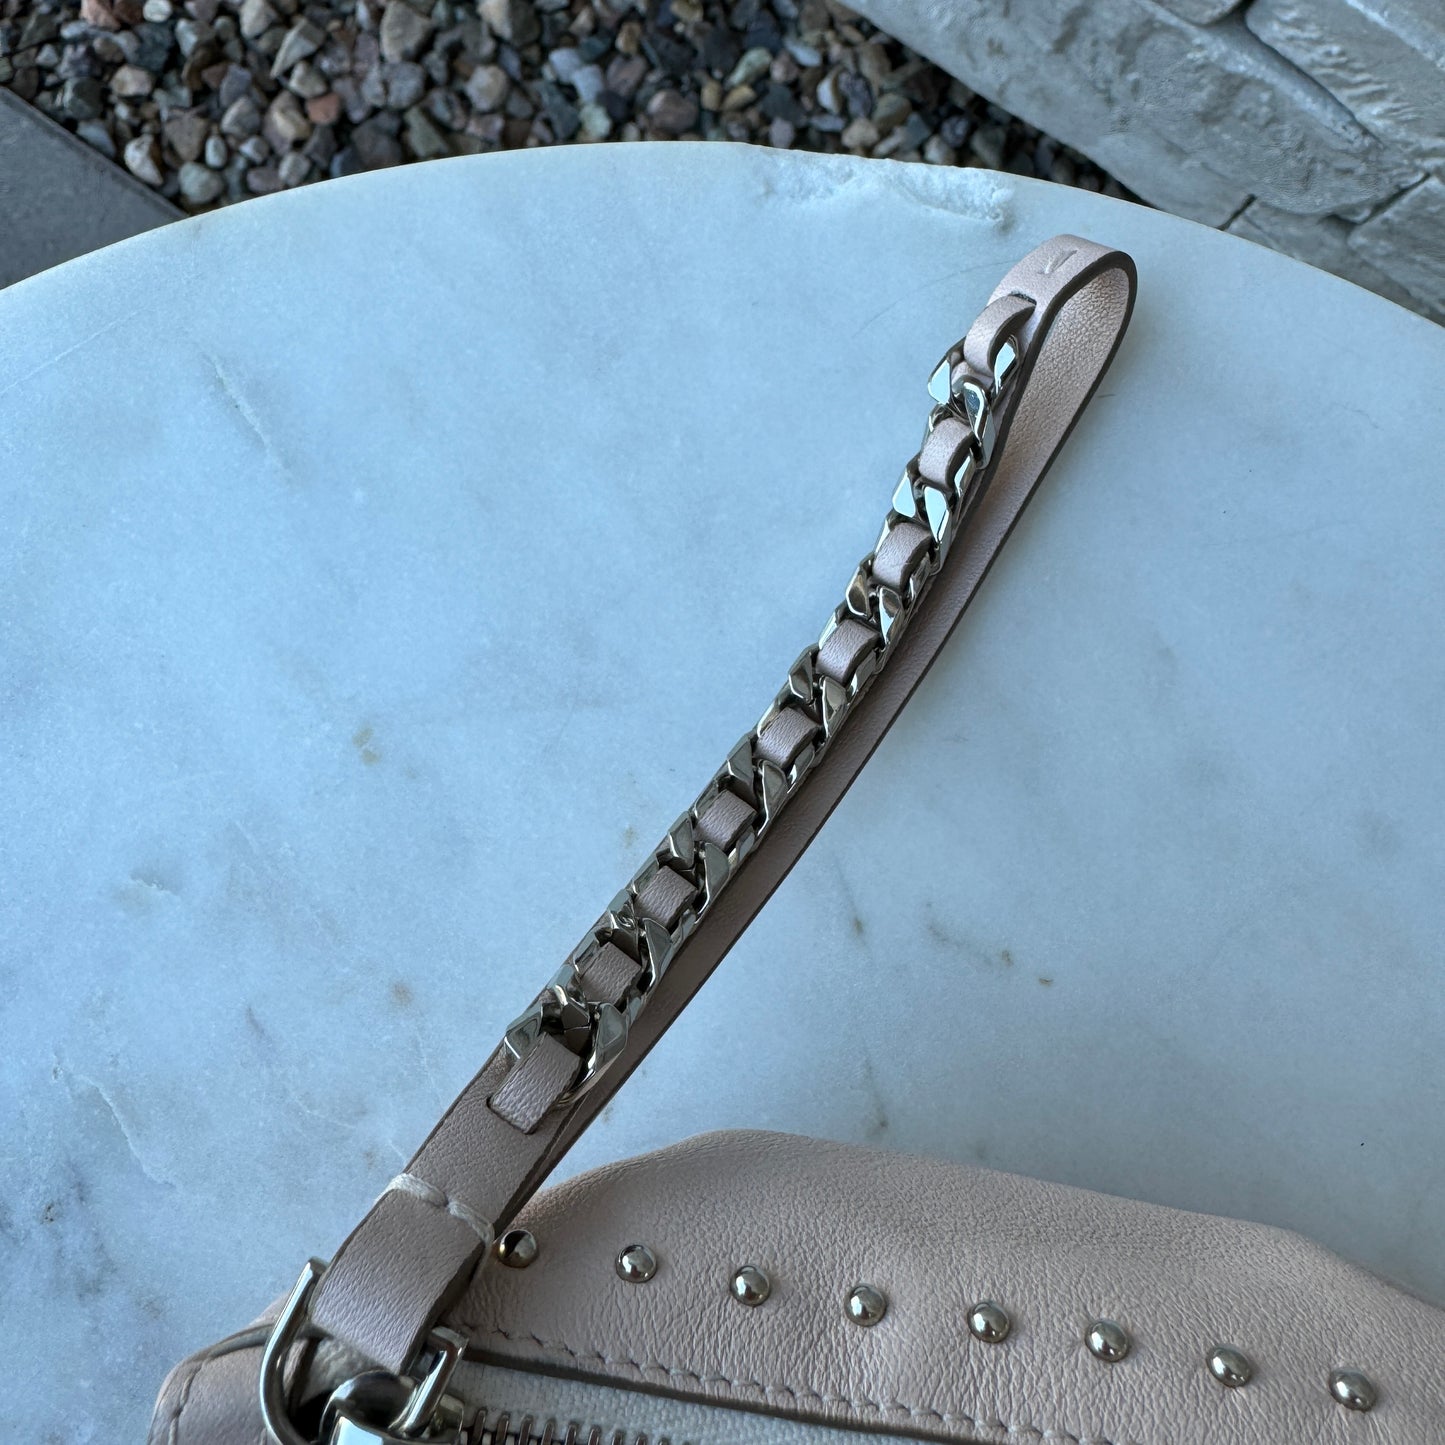 Givenchy Pandora Mini Leather Wristlet